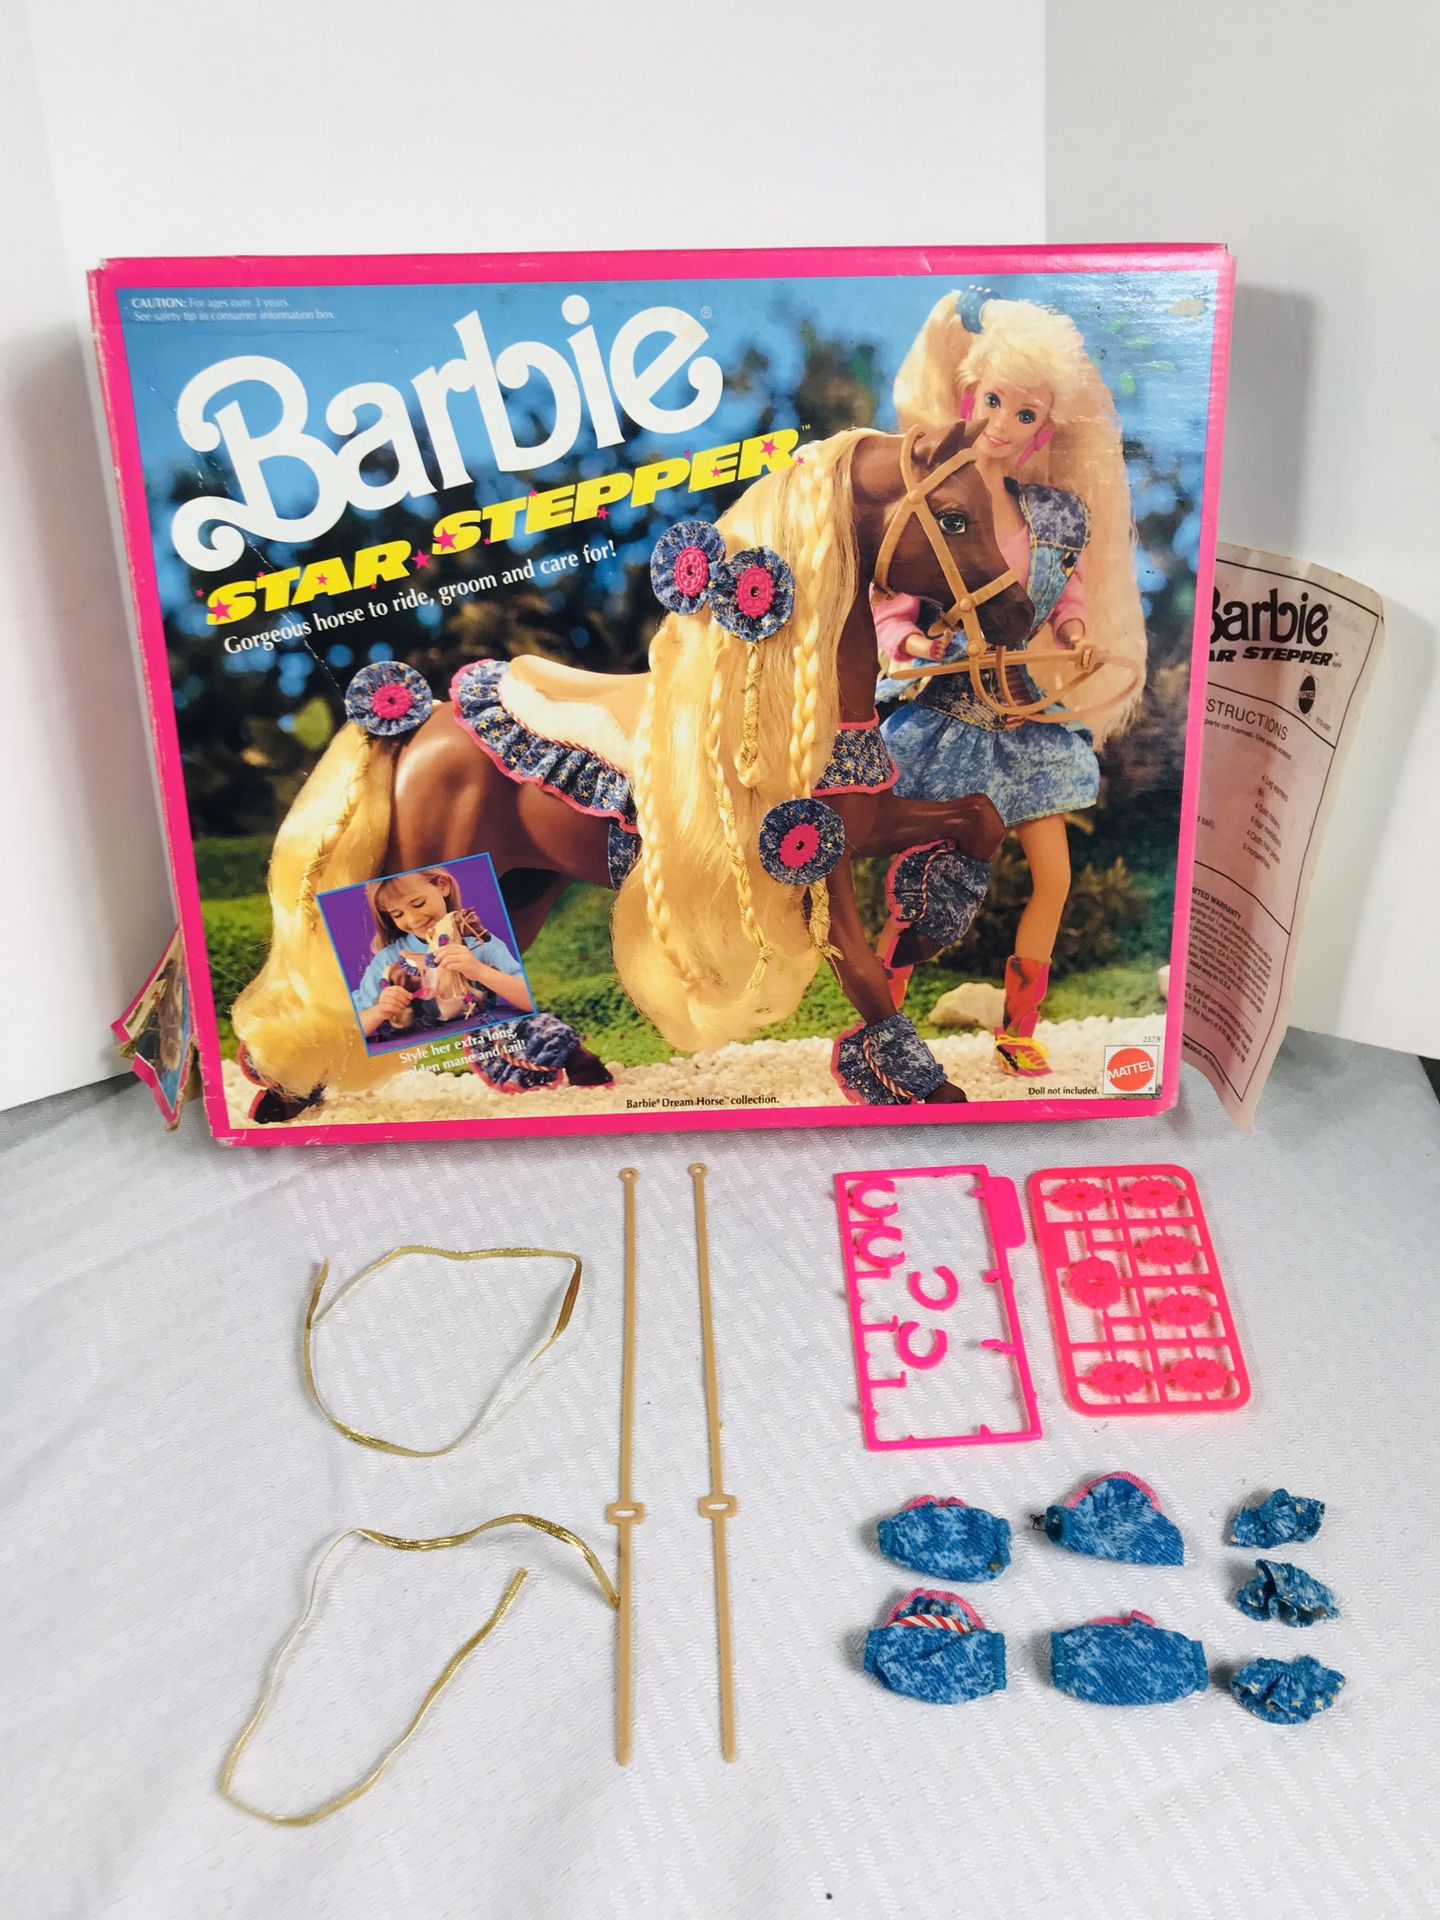 Vintage 1991 Mattel Barbie “Star Stepper” Box w/accessories